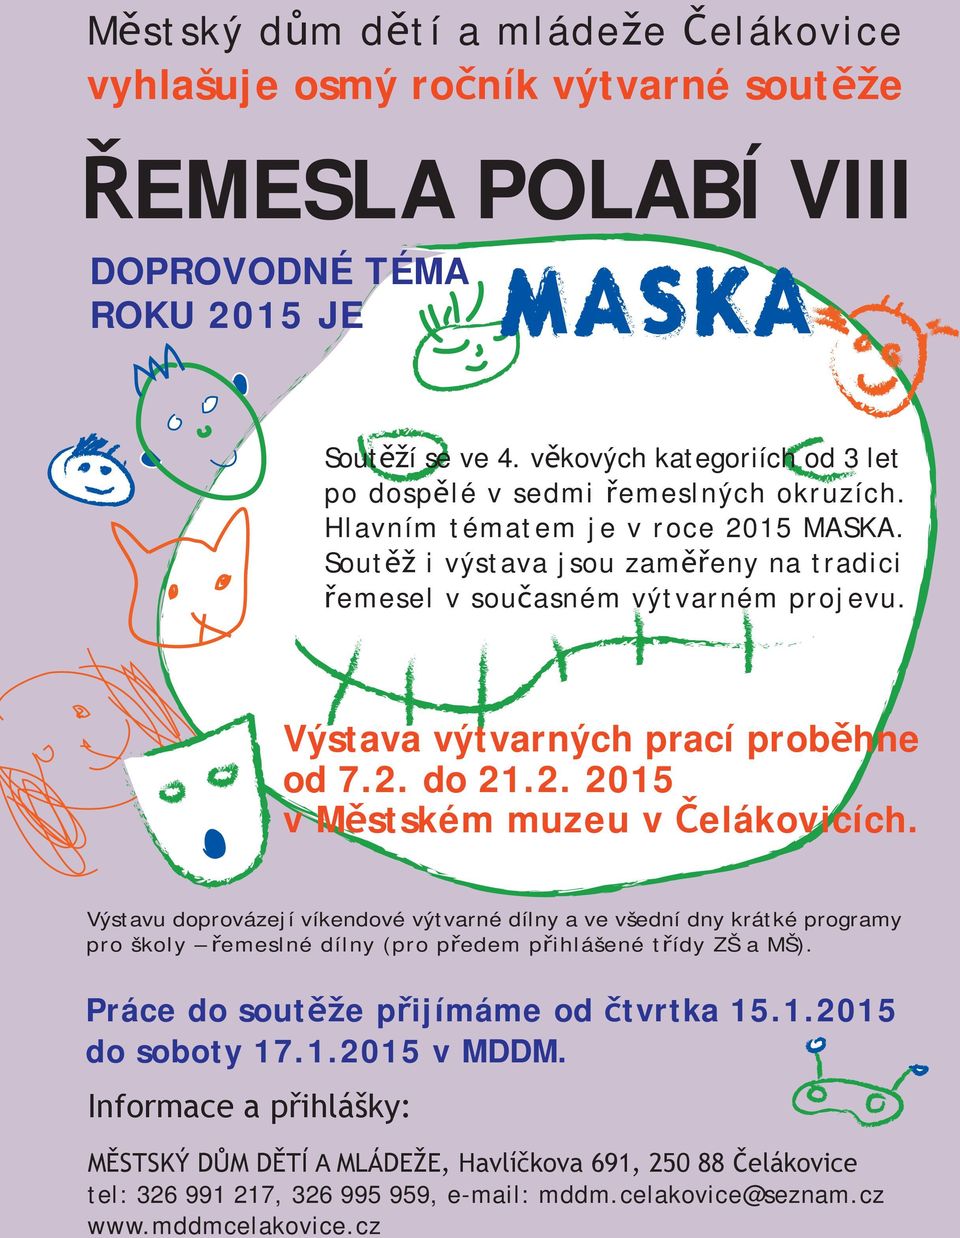 ýtava výtvarných prací proběhne od 7.2. do 21.2. 2015 v Mětkém muzeu v Čelákovicích.